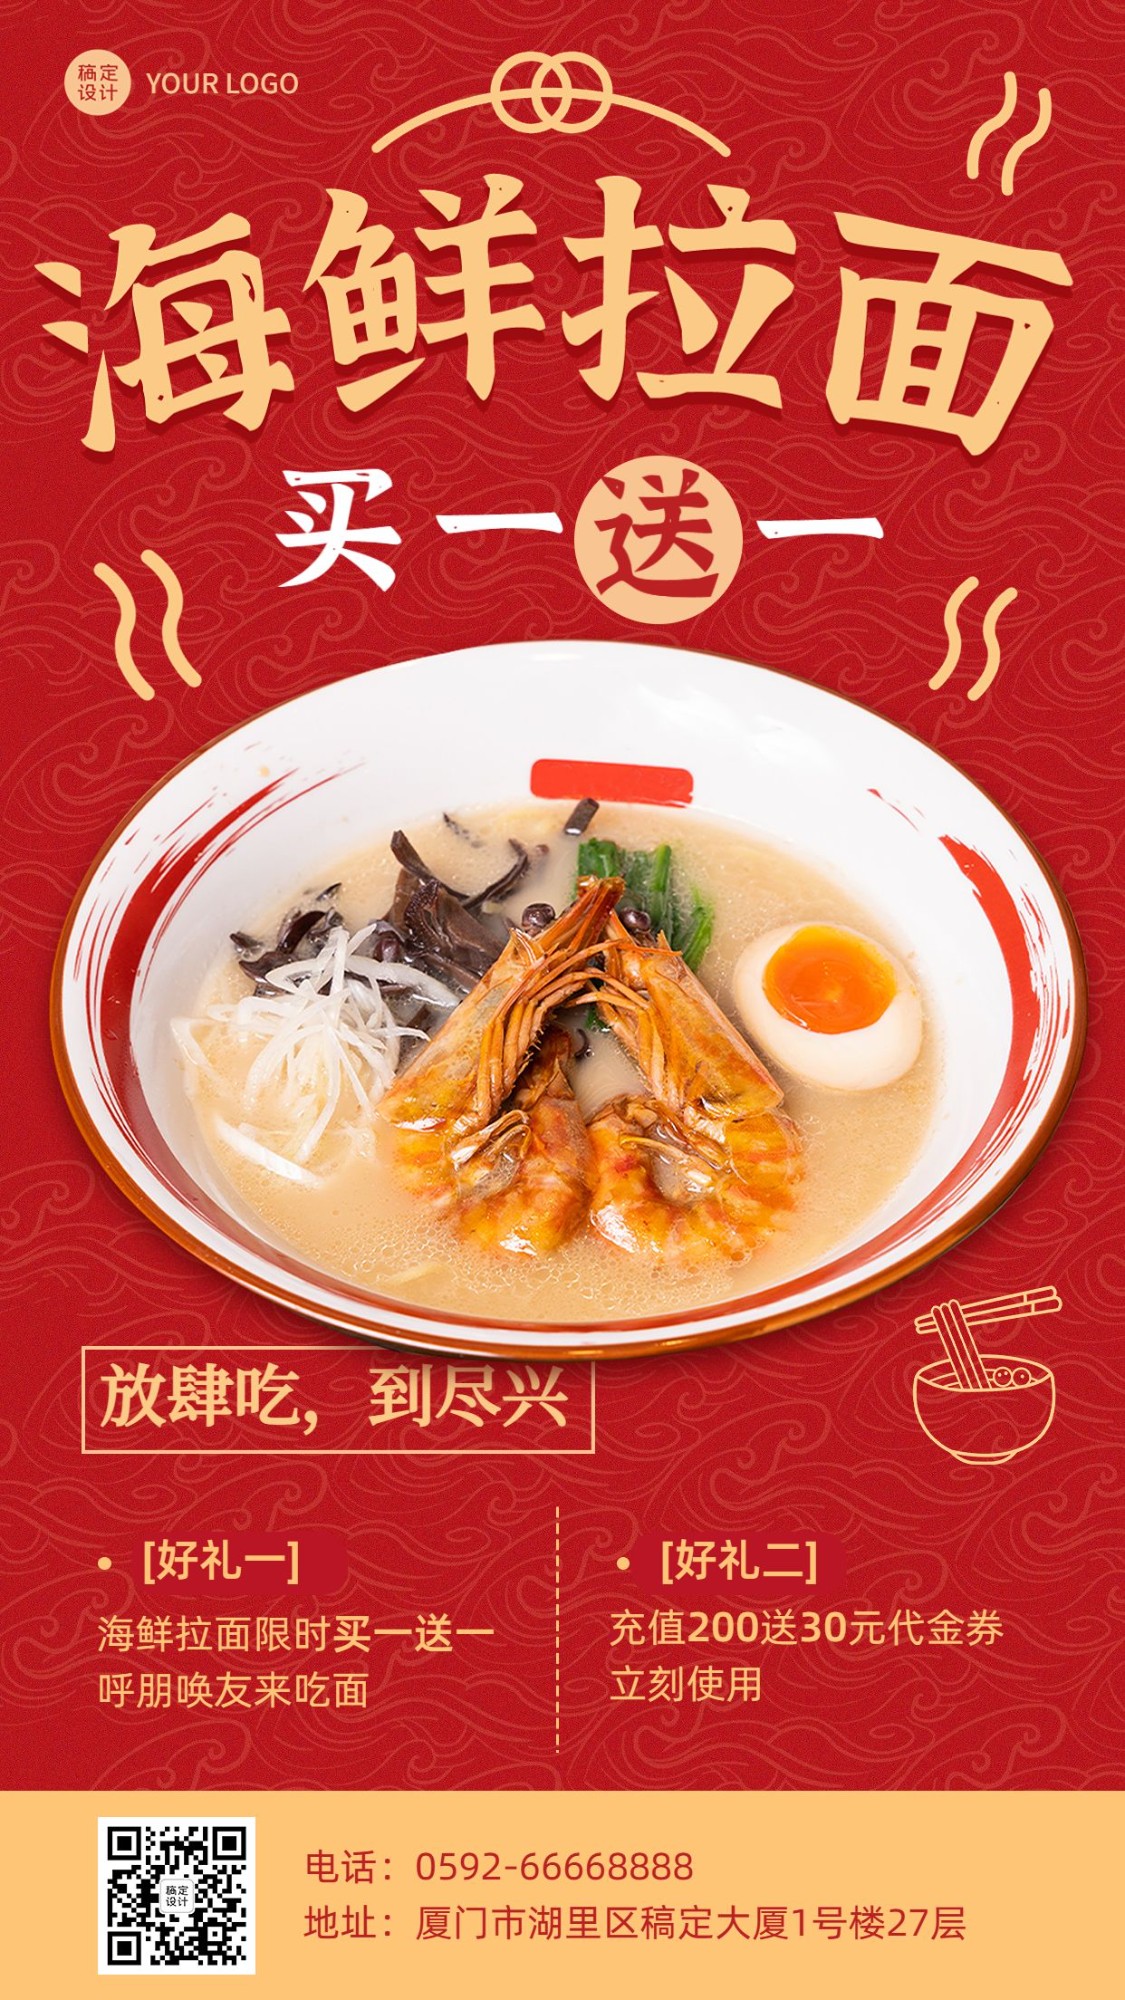 餐饮料理海鲜拉面产品营销手机海报